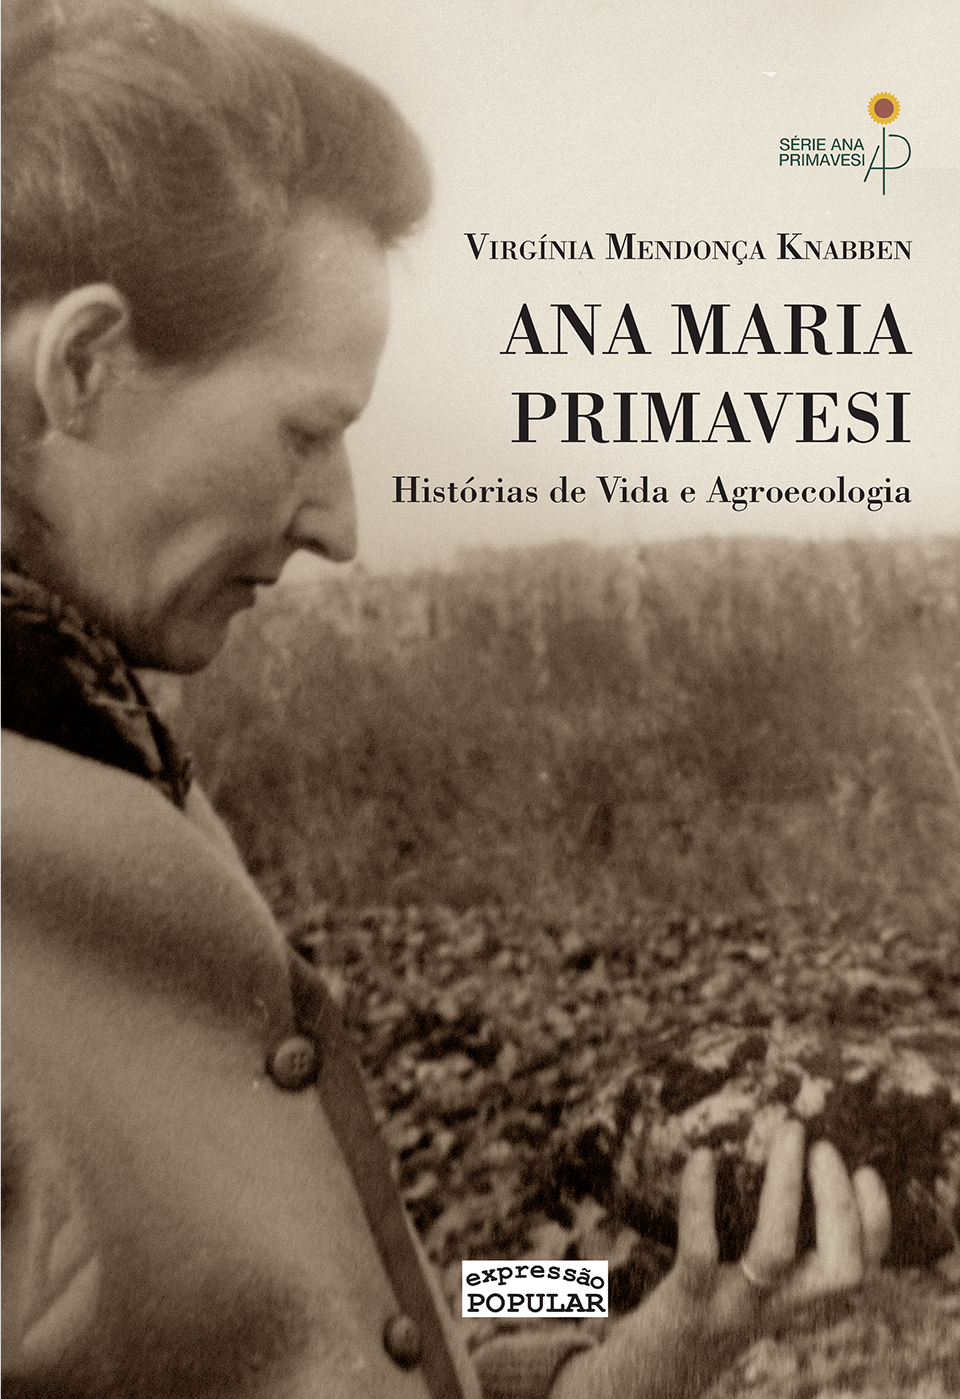 Ana Maria Primavesi - biografia